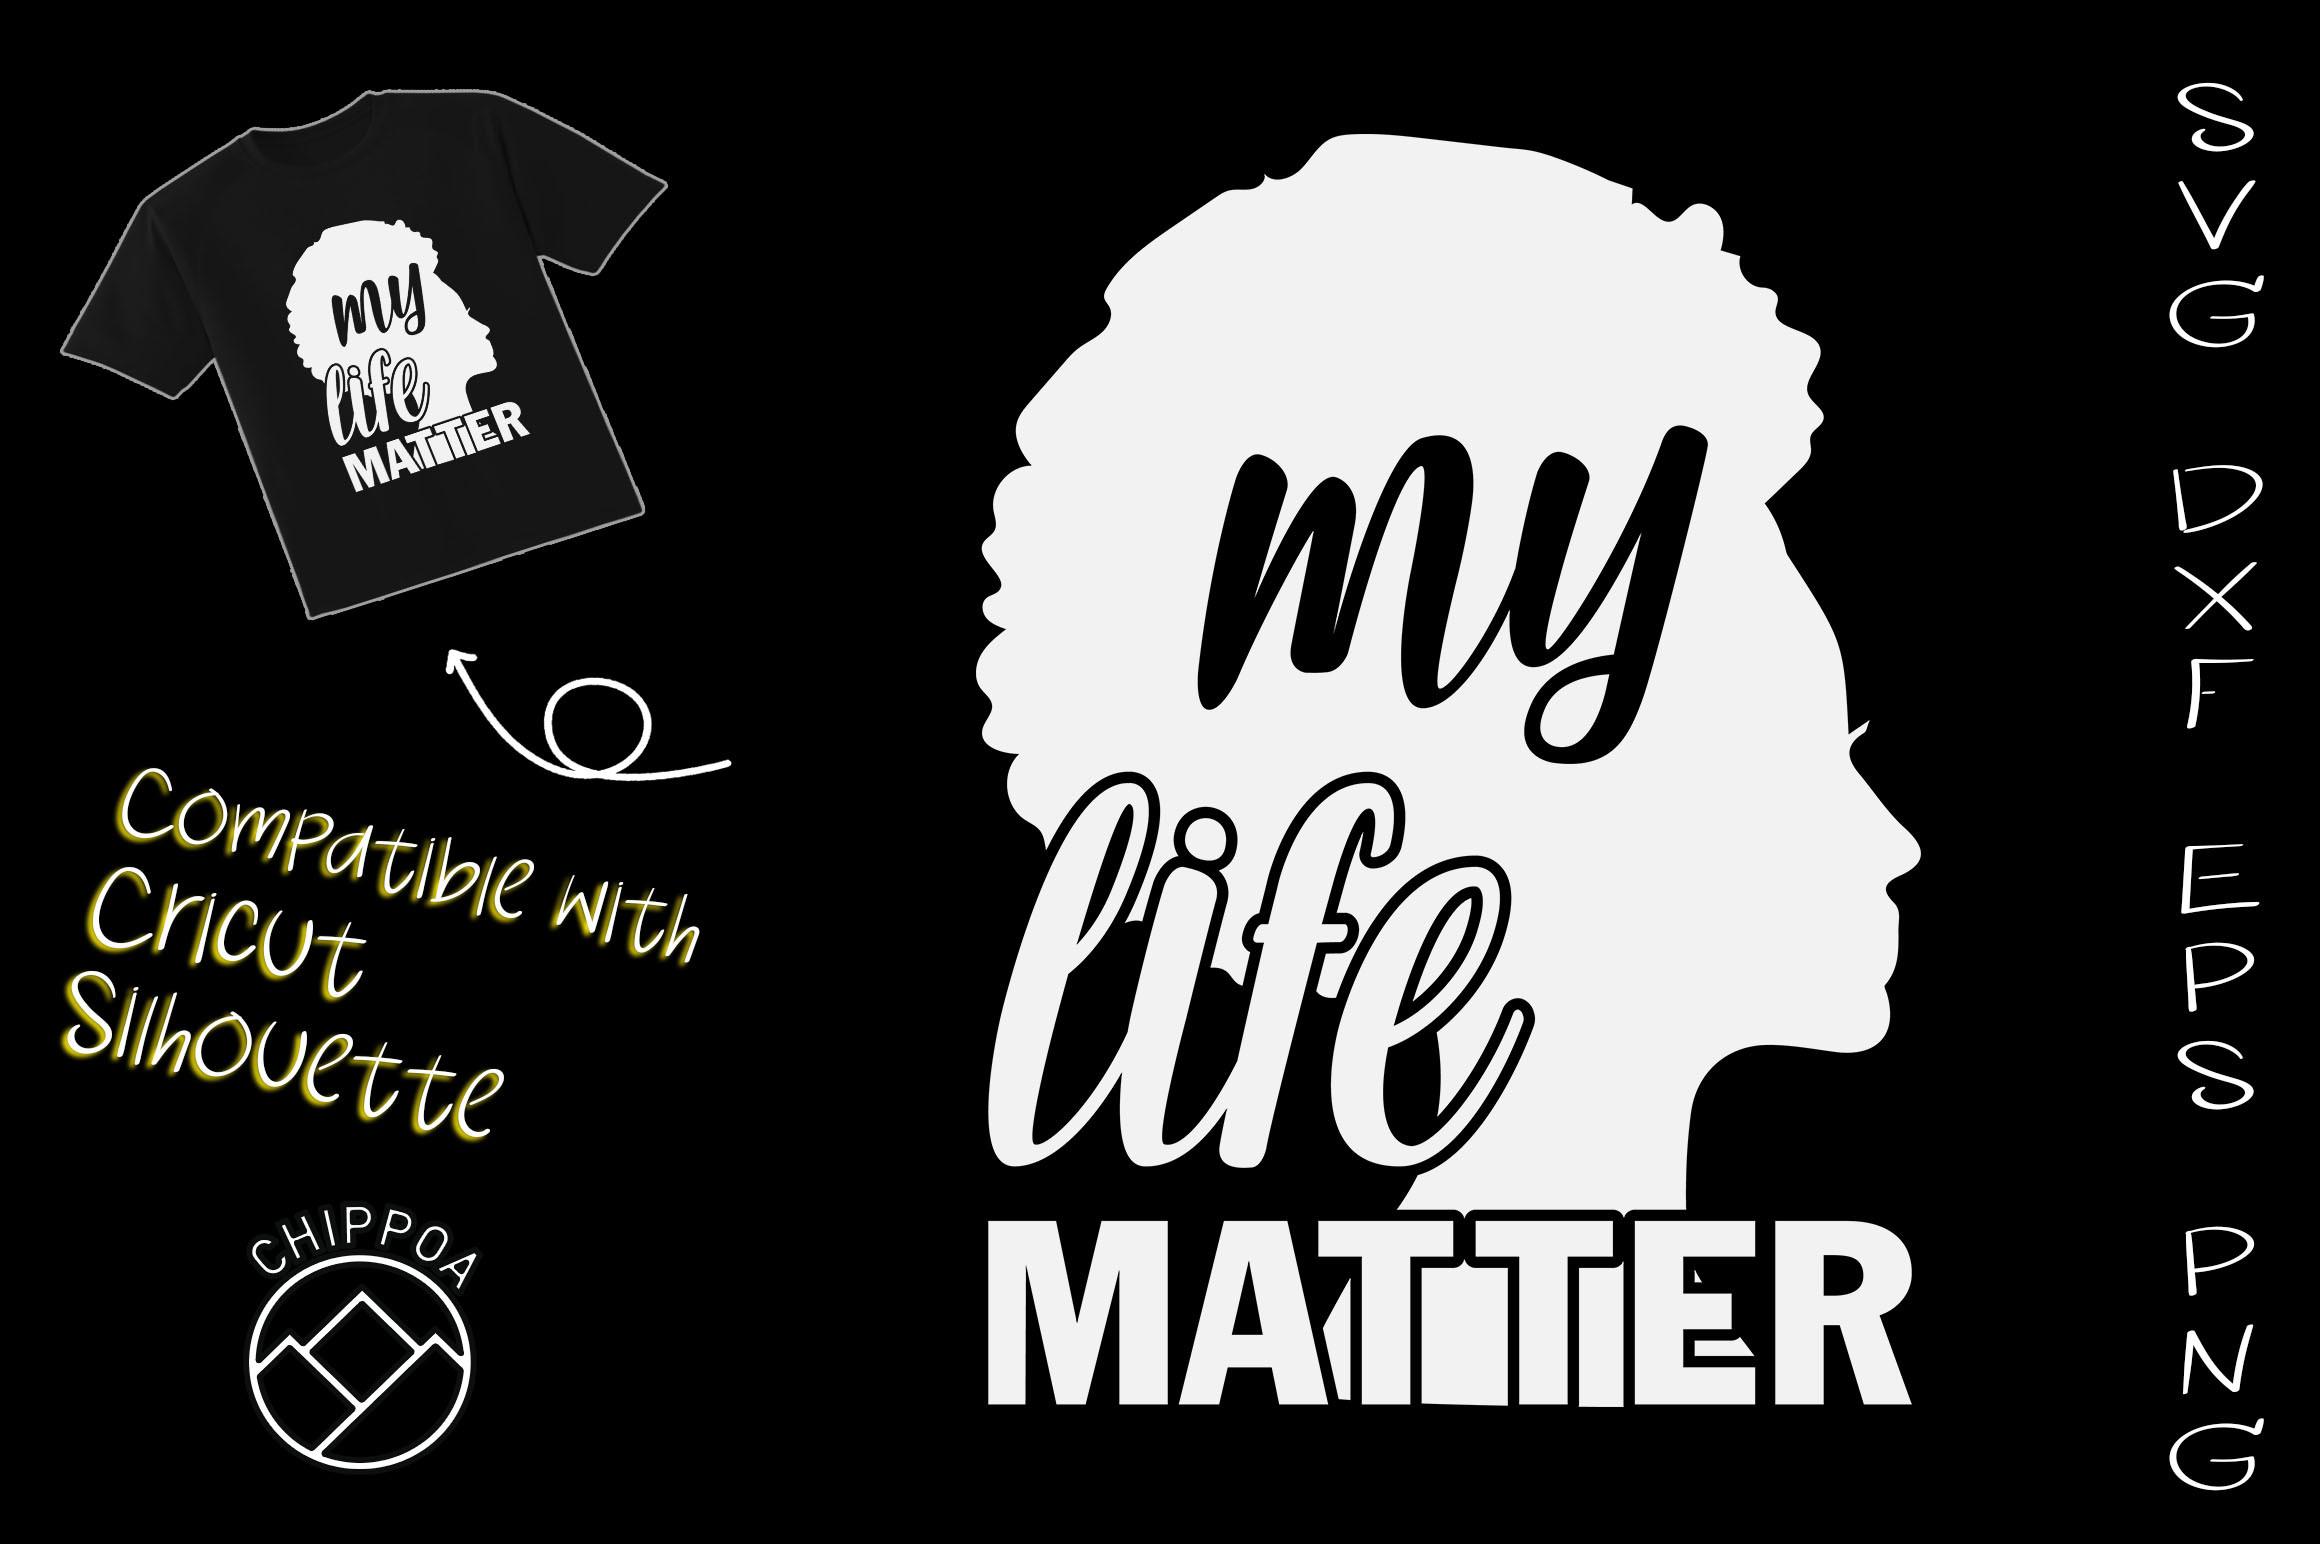 My Life Matter Black Lives Matter